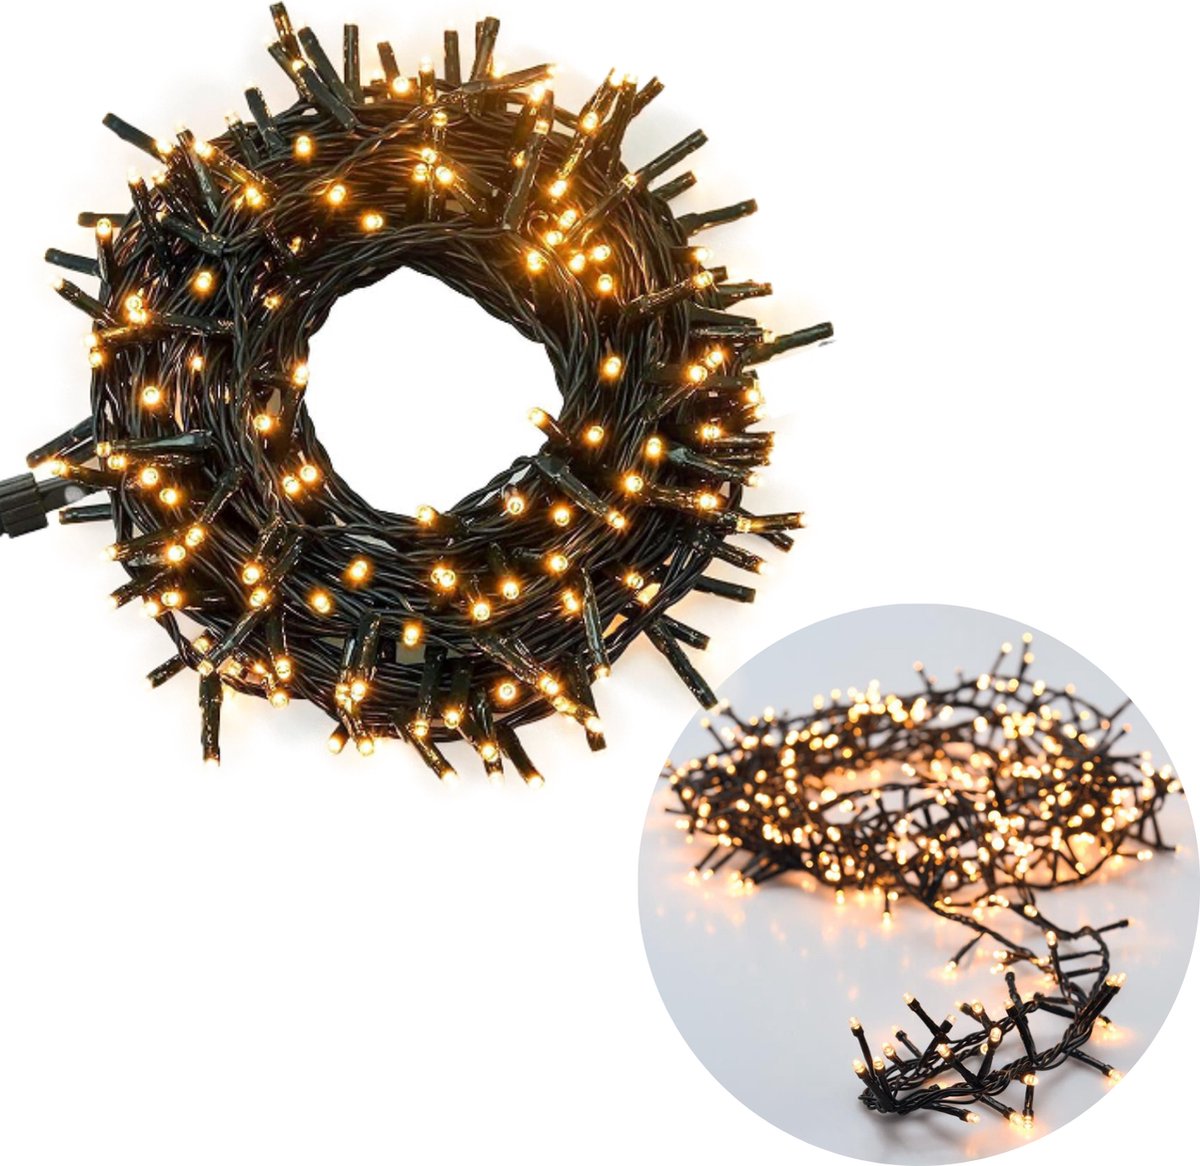 Cheqo® Kerstboomverlichting - Micro Clusterverlichting - Kerstlampjes - Led Verlichting - Kerstverlichting voor Binnen en Buiten - 1500 LED's - 30 Meter - Extra Warm Wit